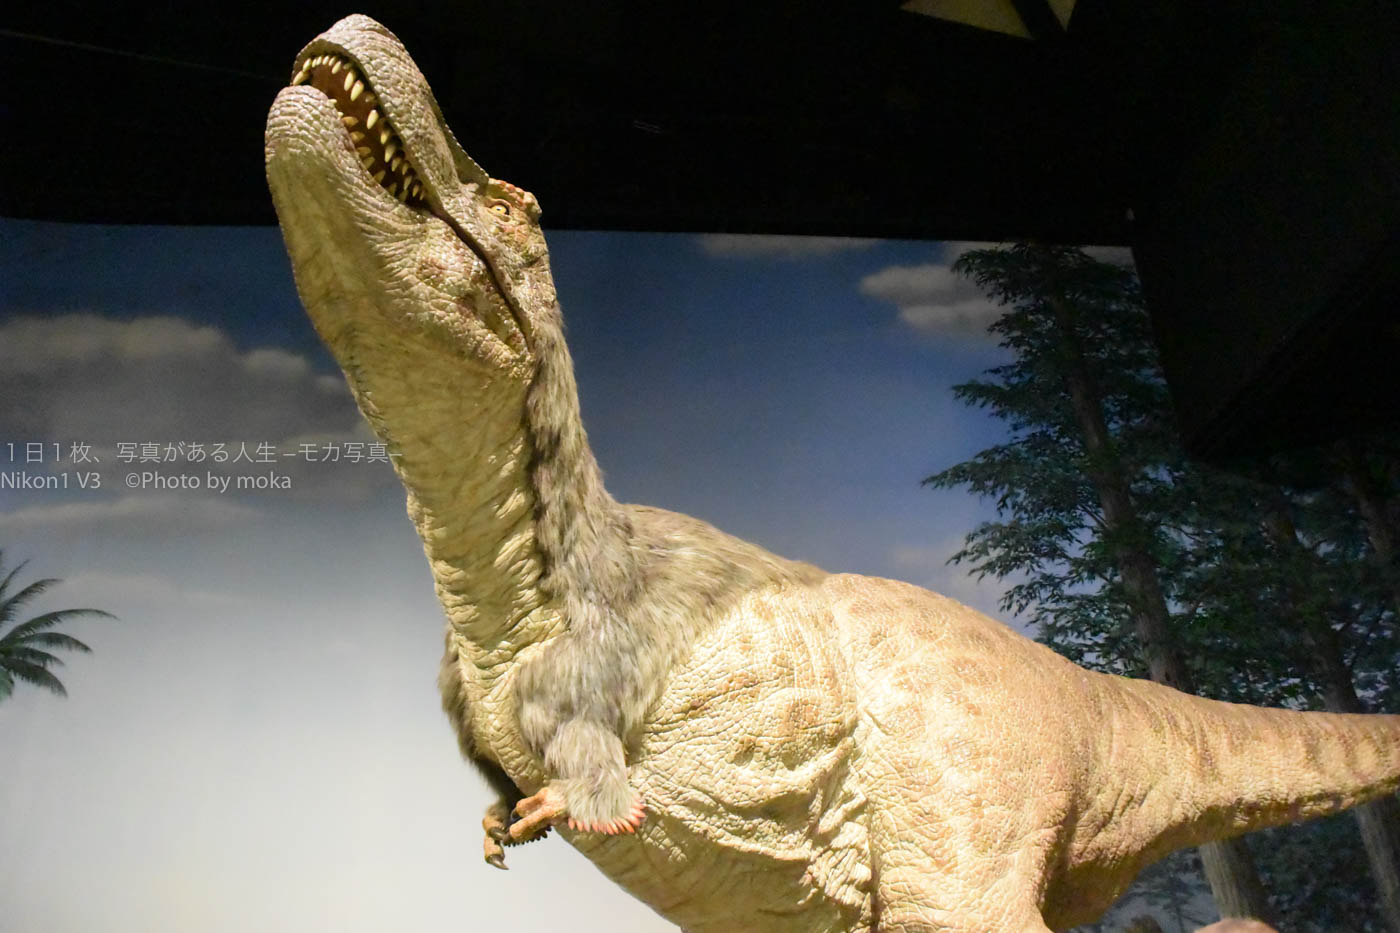 【博物館撮影】最新の研究の「羽毛ティラノサウルス」